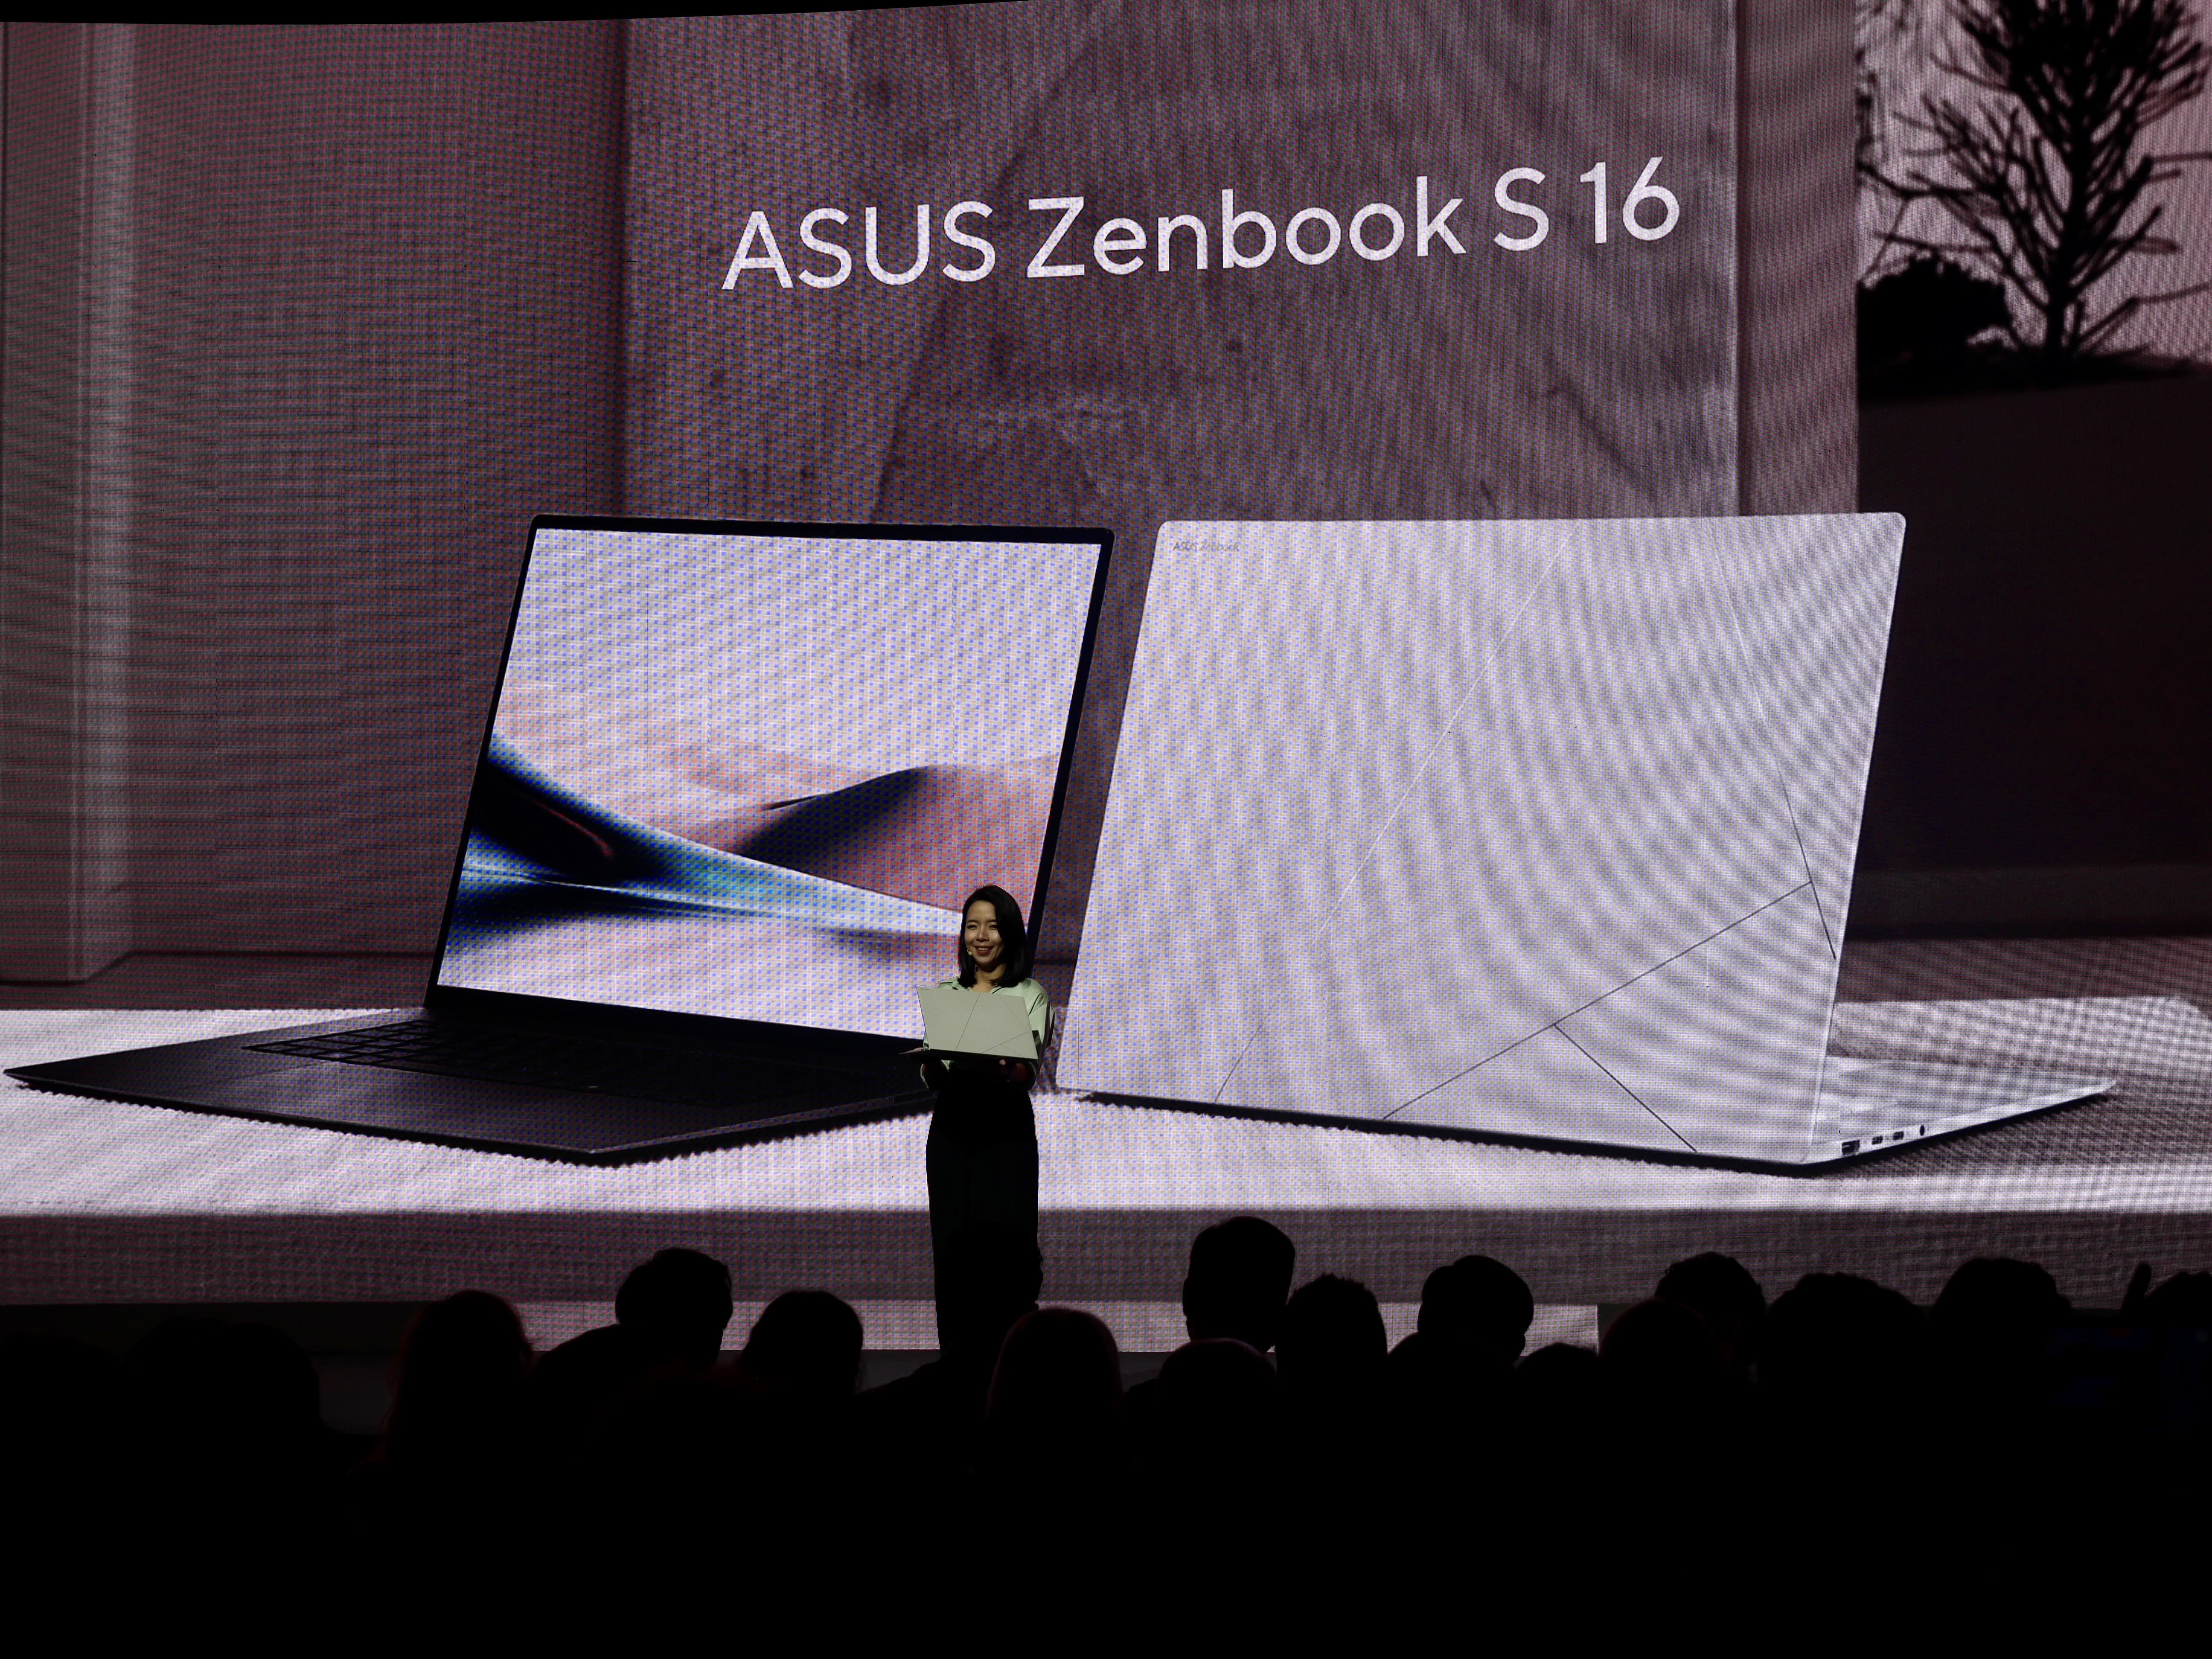 On a pris en main le nouveau Zenbook S16 : l'un des plus beaux PC jamais lancés par ASUS